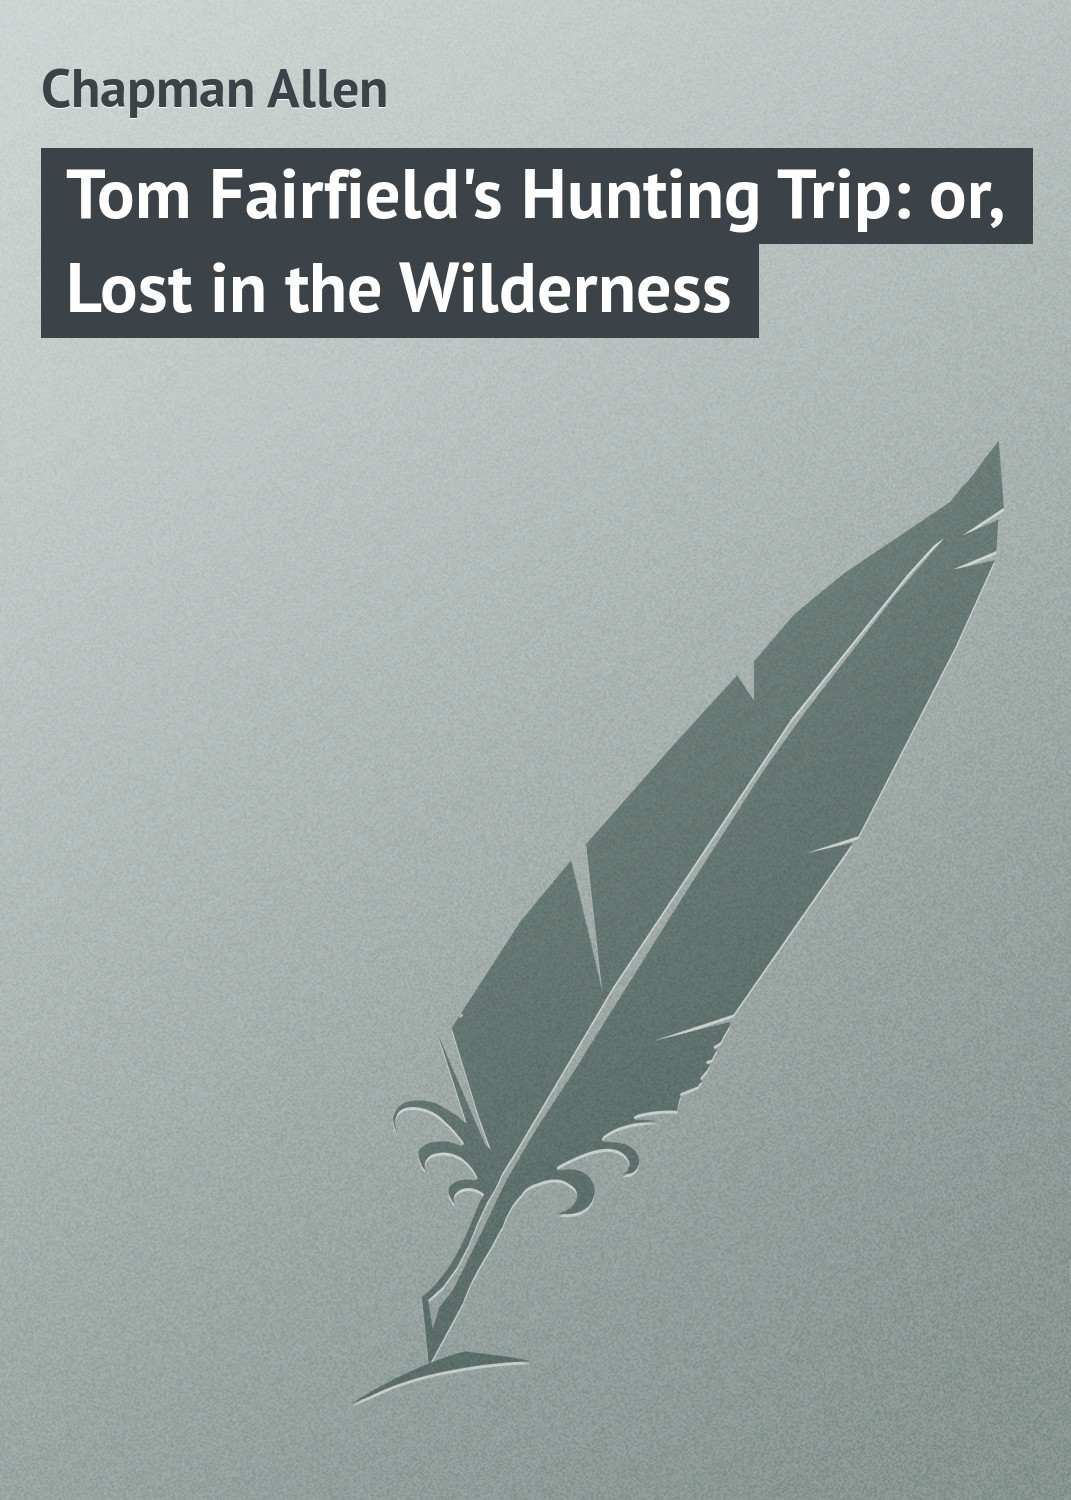 Книга Tom Fairfield's Hunting Trip: or, Lost in the Wilderness из серии , созданная Allen Chapman, может относится к жанру Зарубежная классика, Зарубежные детские книги. Стоимость электронной книги Tom Fairfield's Hunting Trip: or, Lost in the Wilderness с идентификатором 23153739 составляет 5.99 руб.